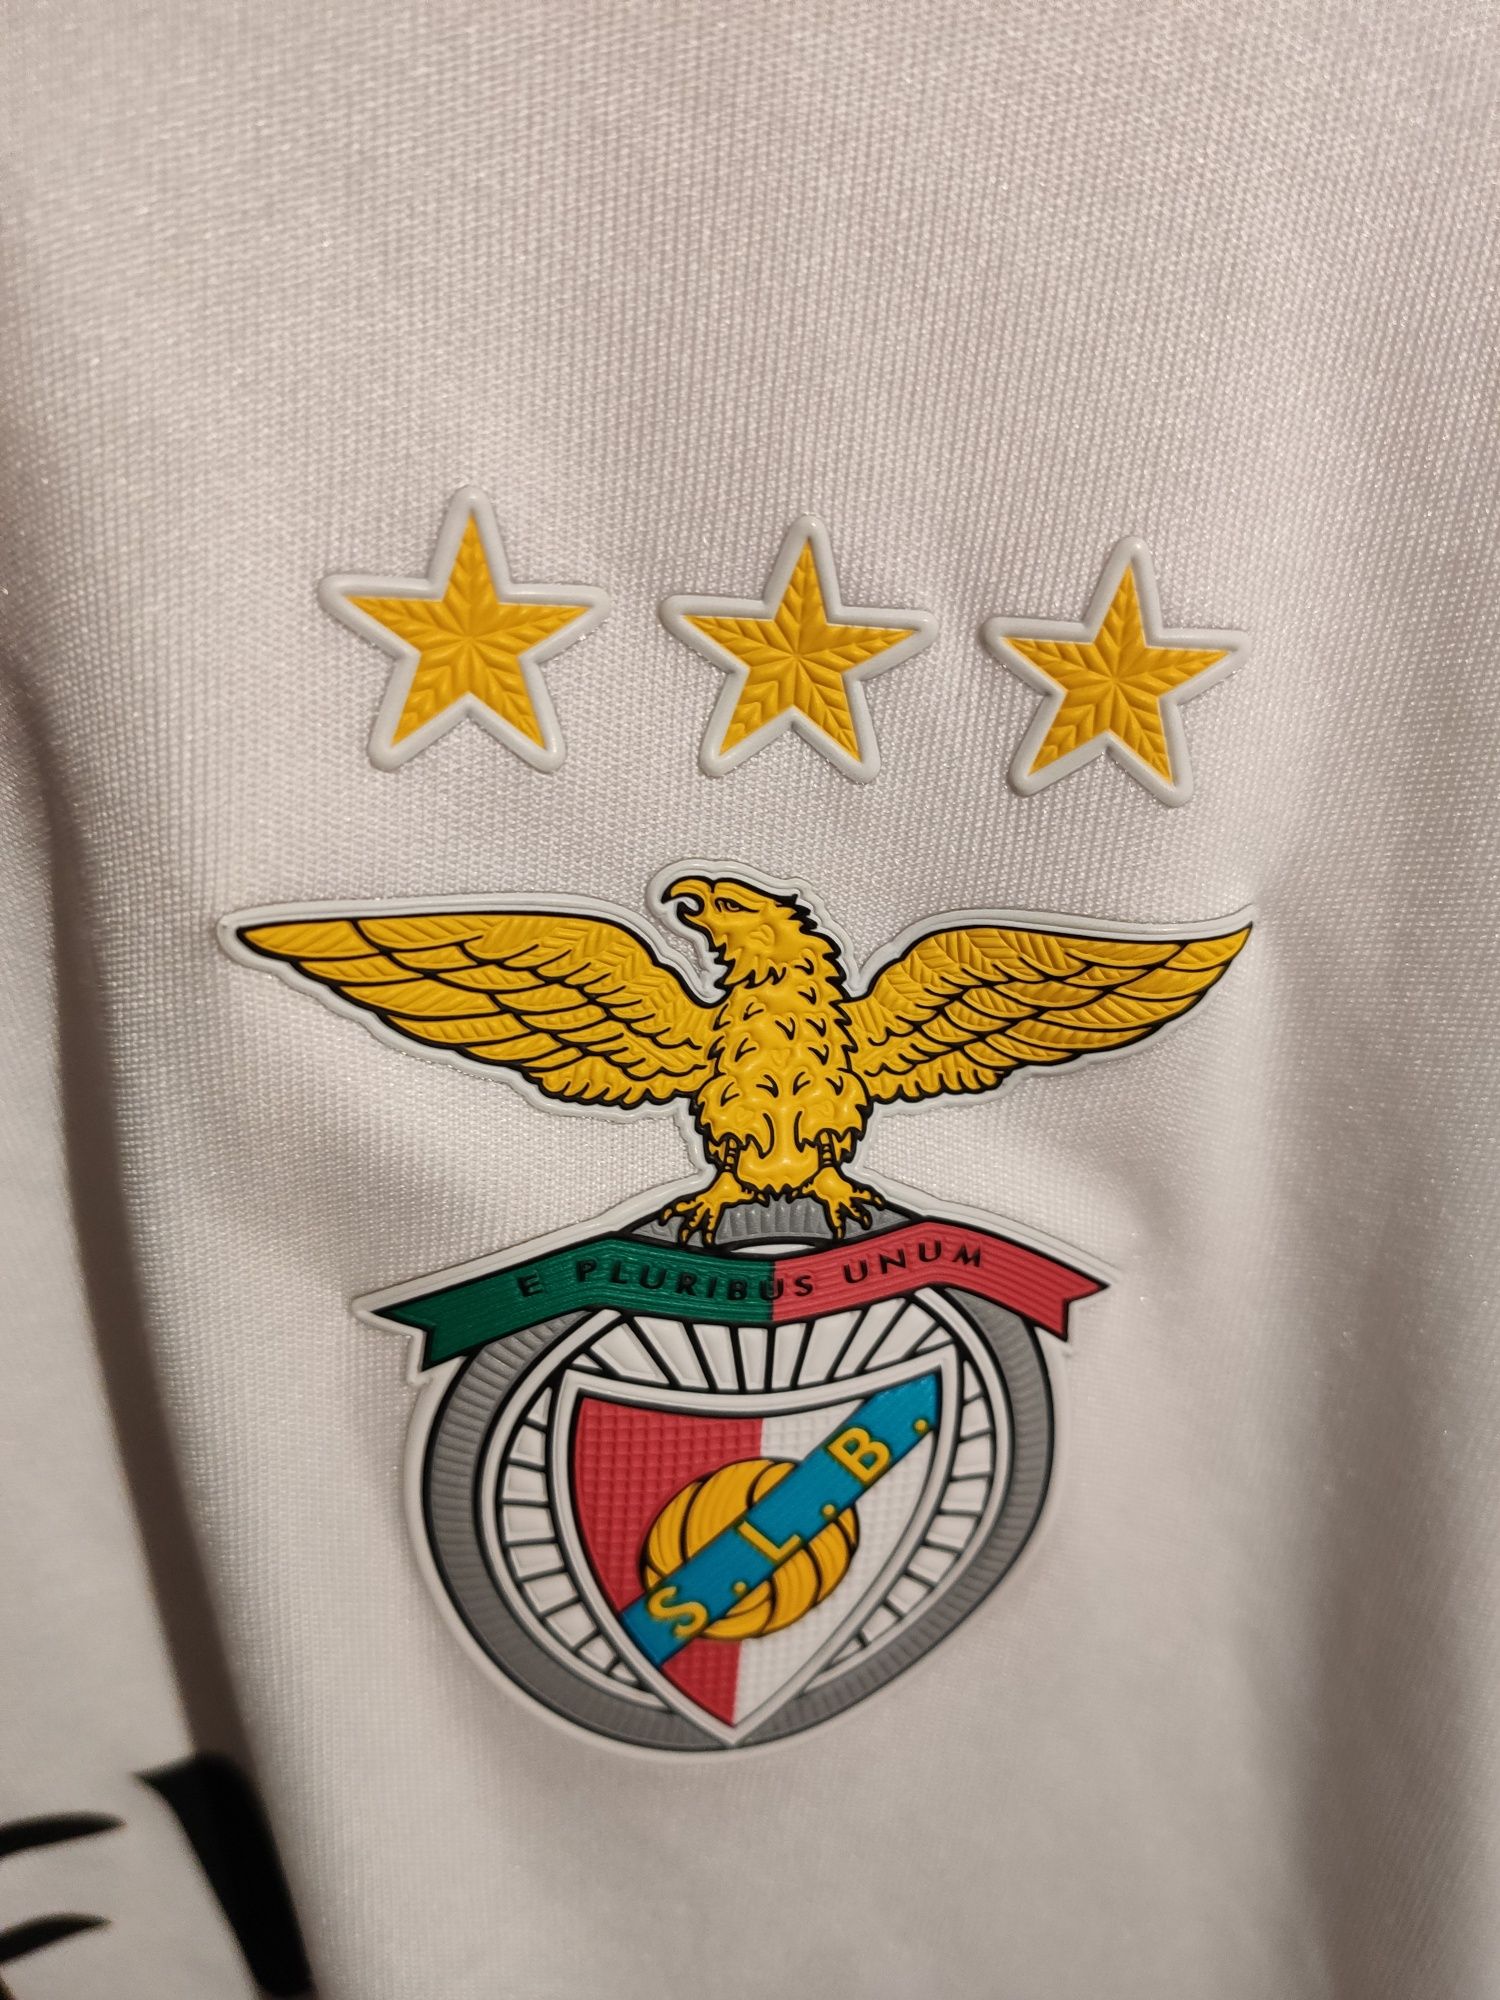 Camisola Benfica oficial com o nome Afonso 5